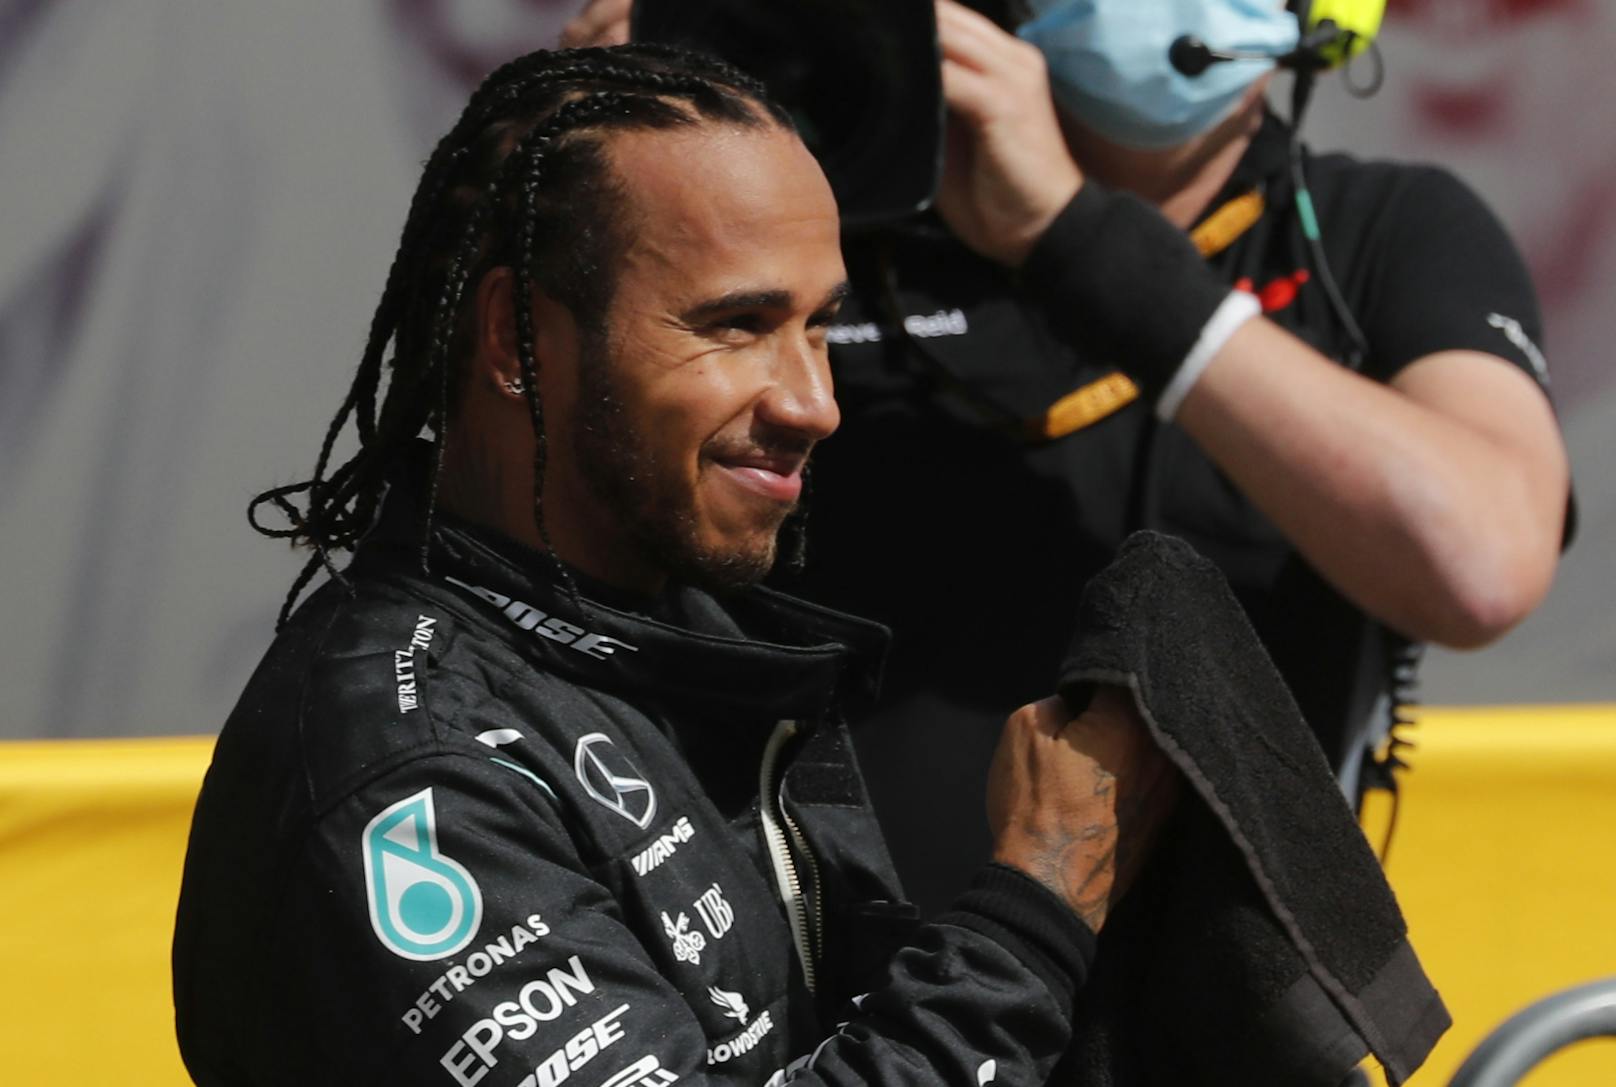 Plattformübergreifend hat der sechsfache Weltmeister Lewis Hamilton die meisten Follower.